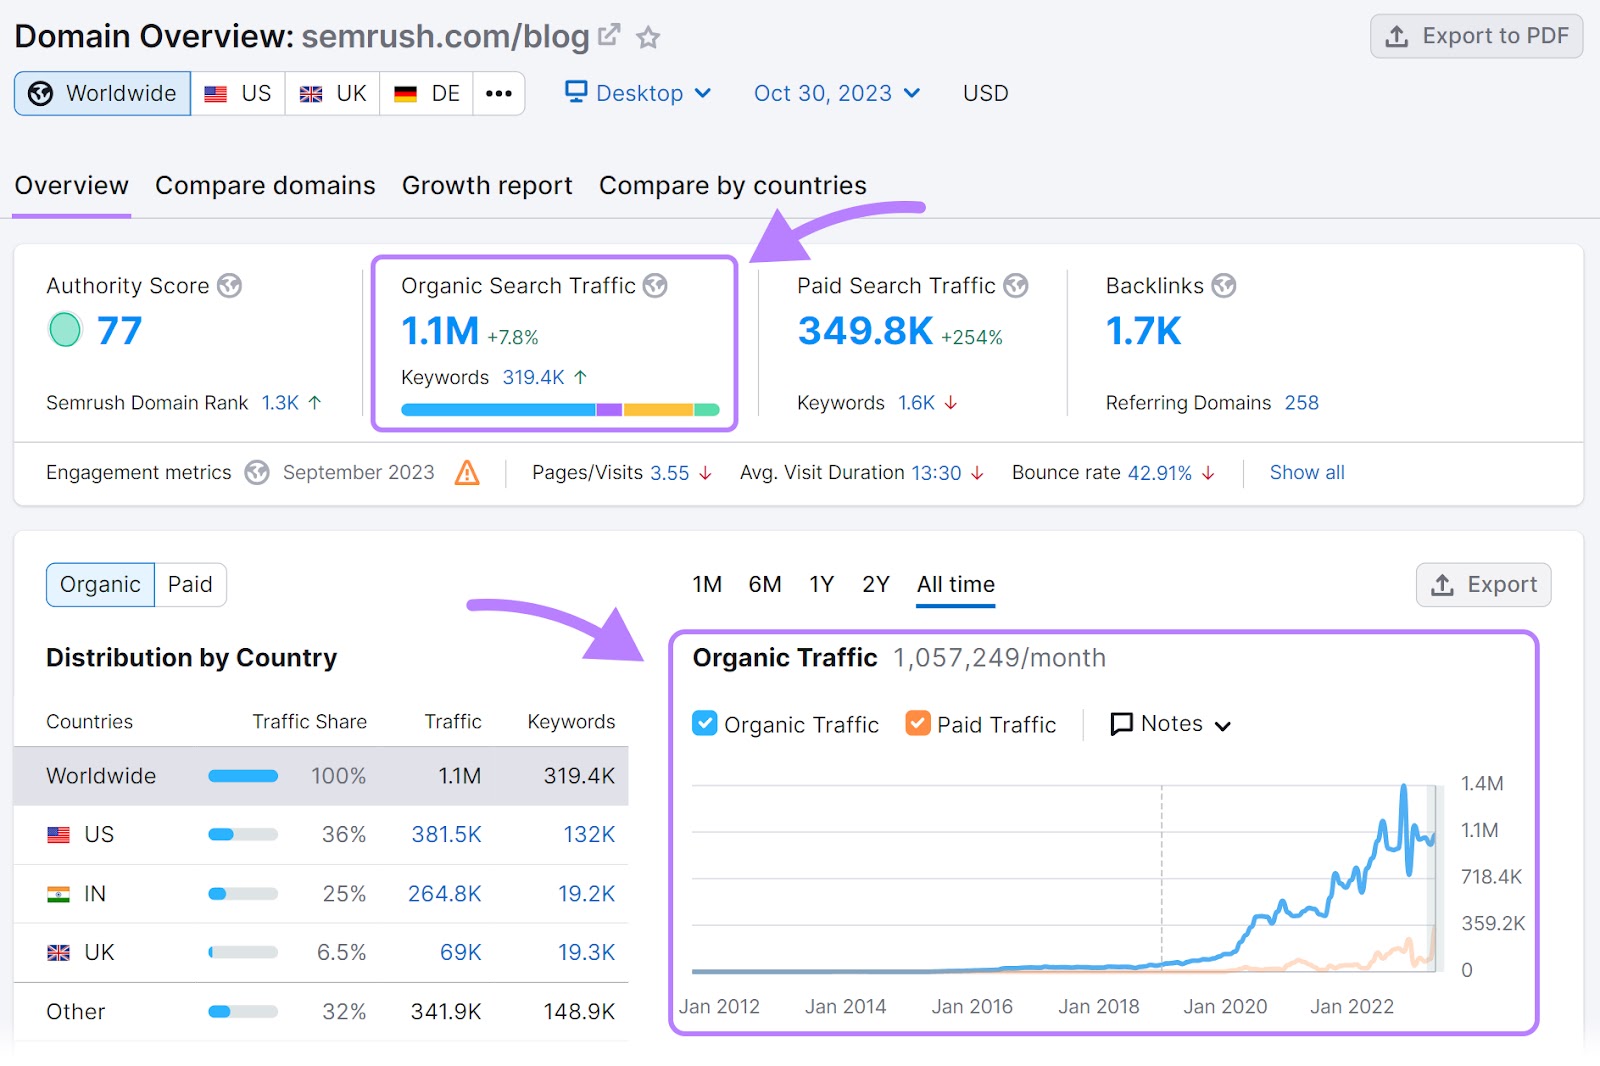 Domain Overview report for "semrush.com/blog"